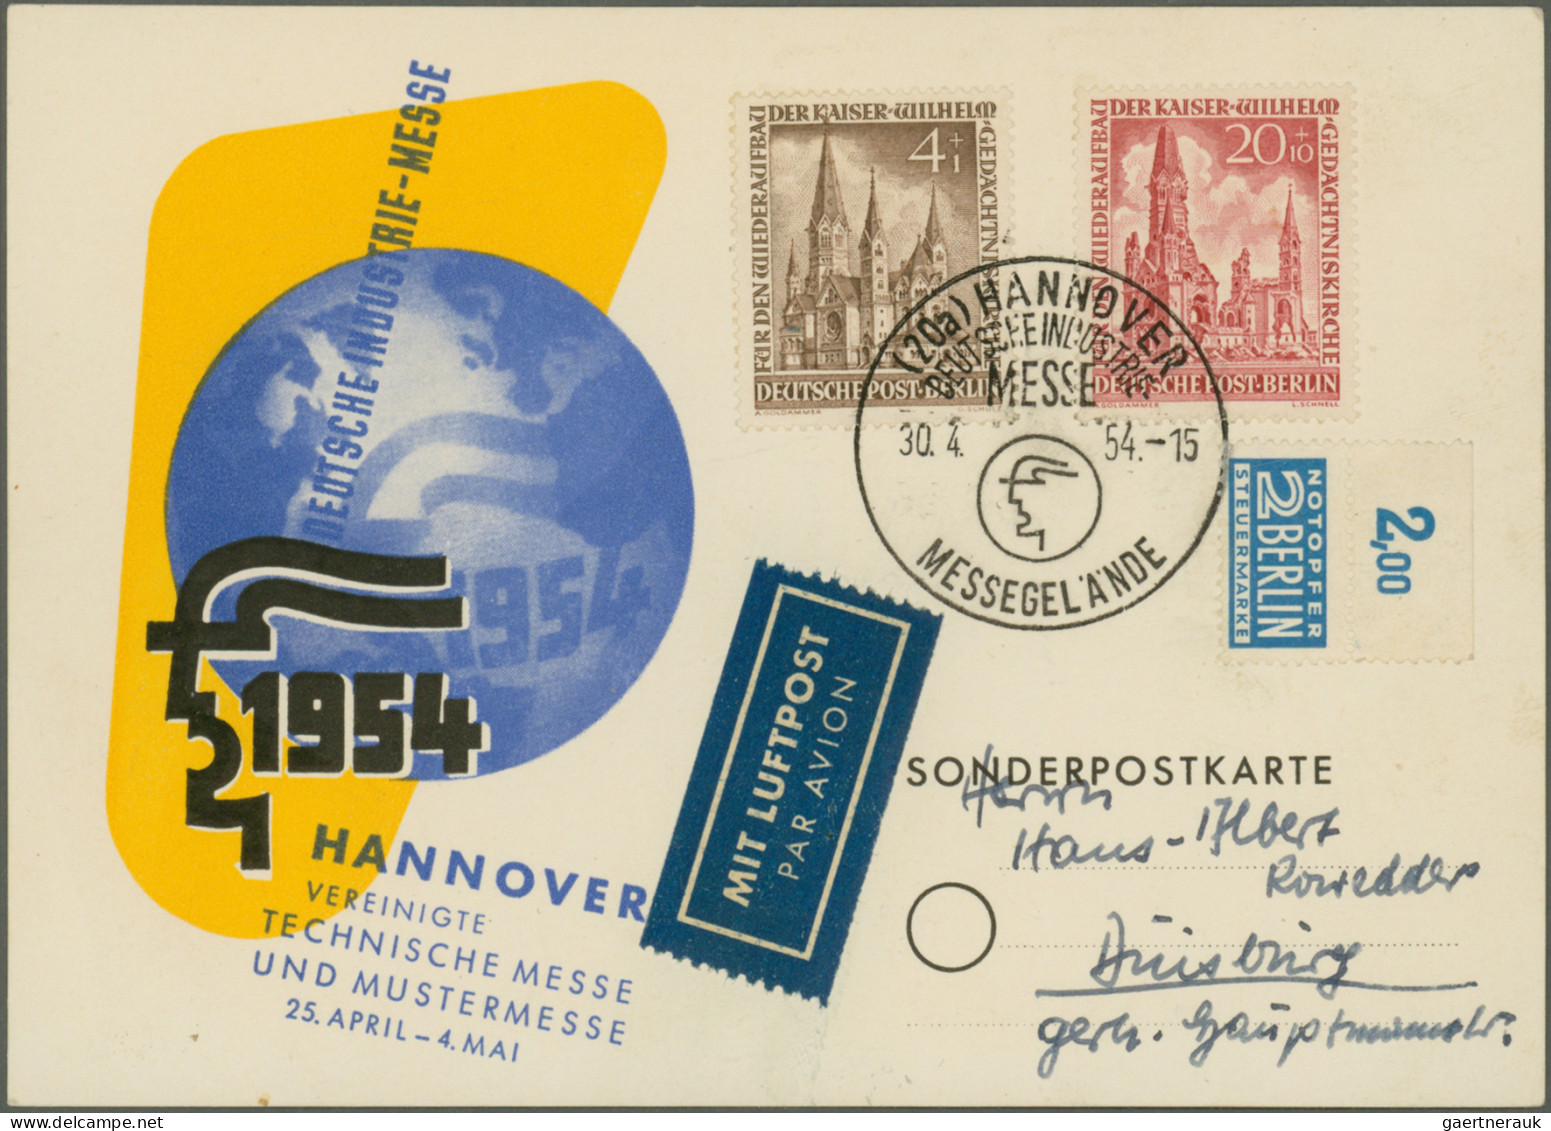 Berlin: 1949/1966, saubere Partie von 38 Briefen und Karten mit dekorativen Fran